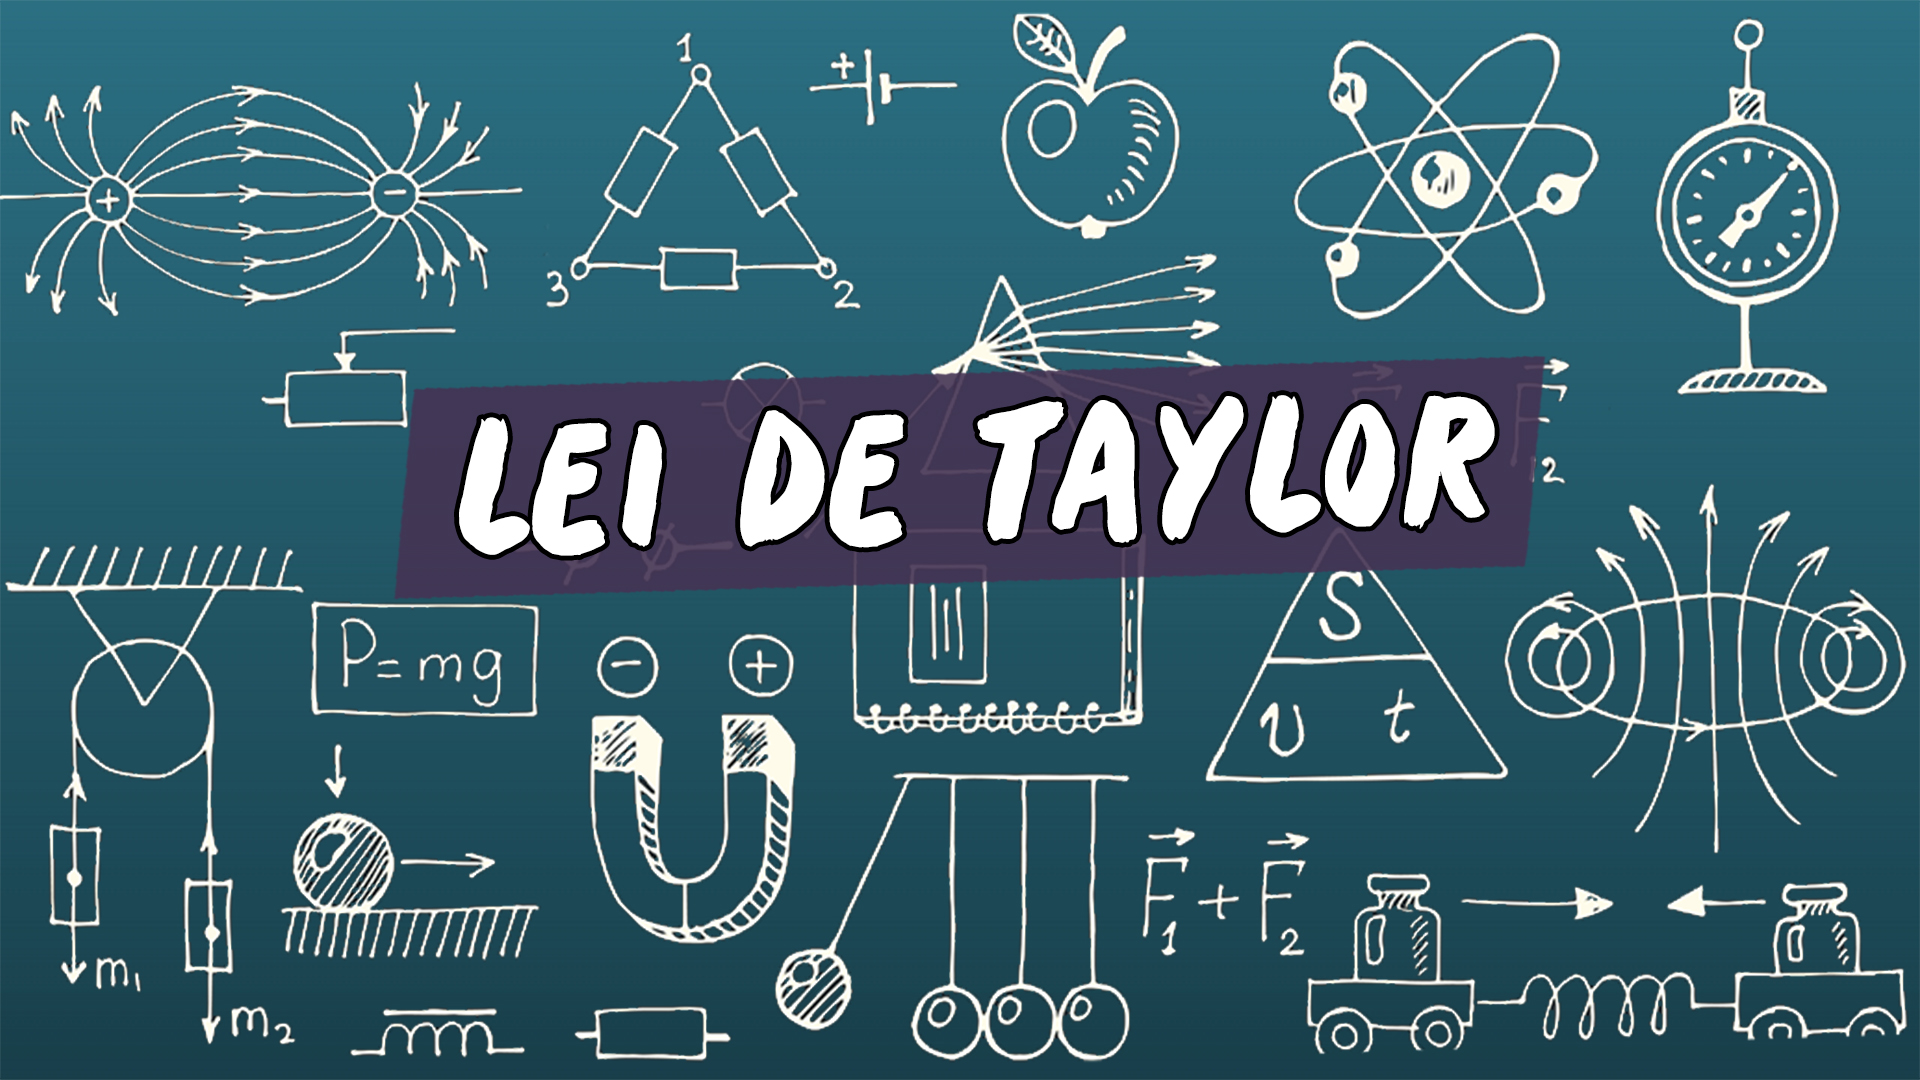 Escrito"Lei de Taylor" sobre uma representação de vários conceitos da área da física.